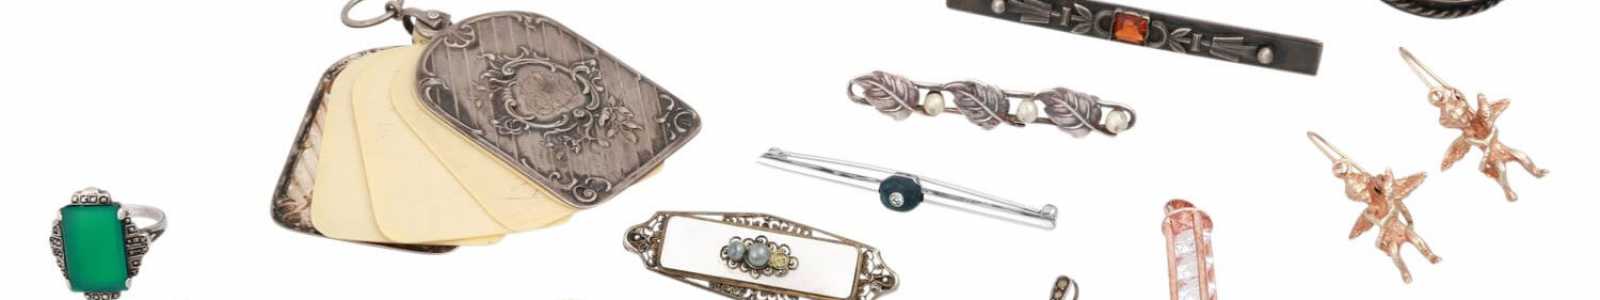 Schmuck, Uhren, Porzellan, Silber, Luxus-Uhren & Accessoires